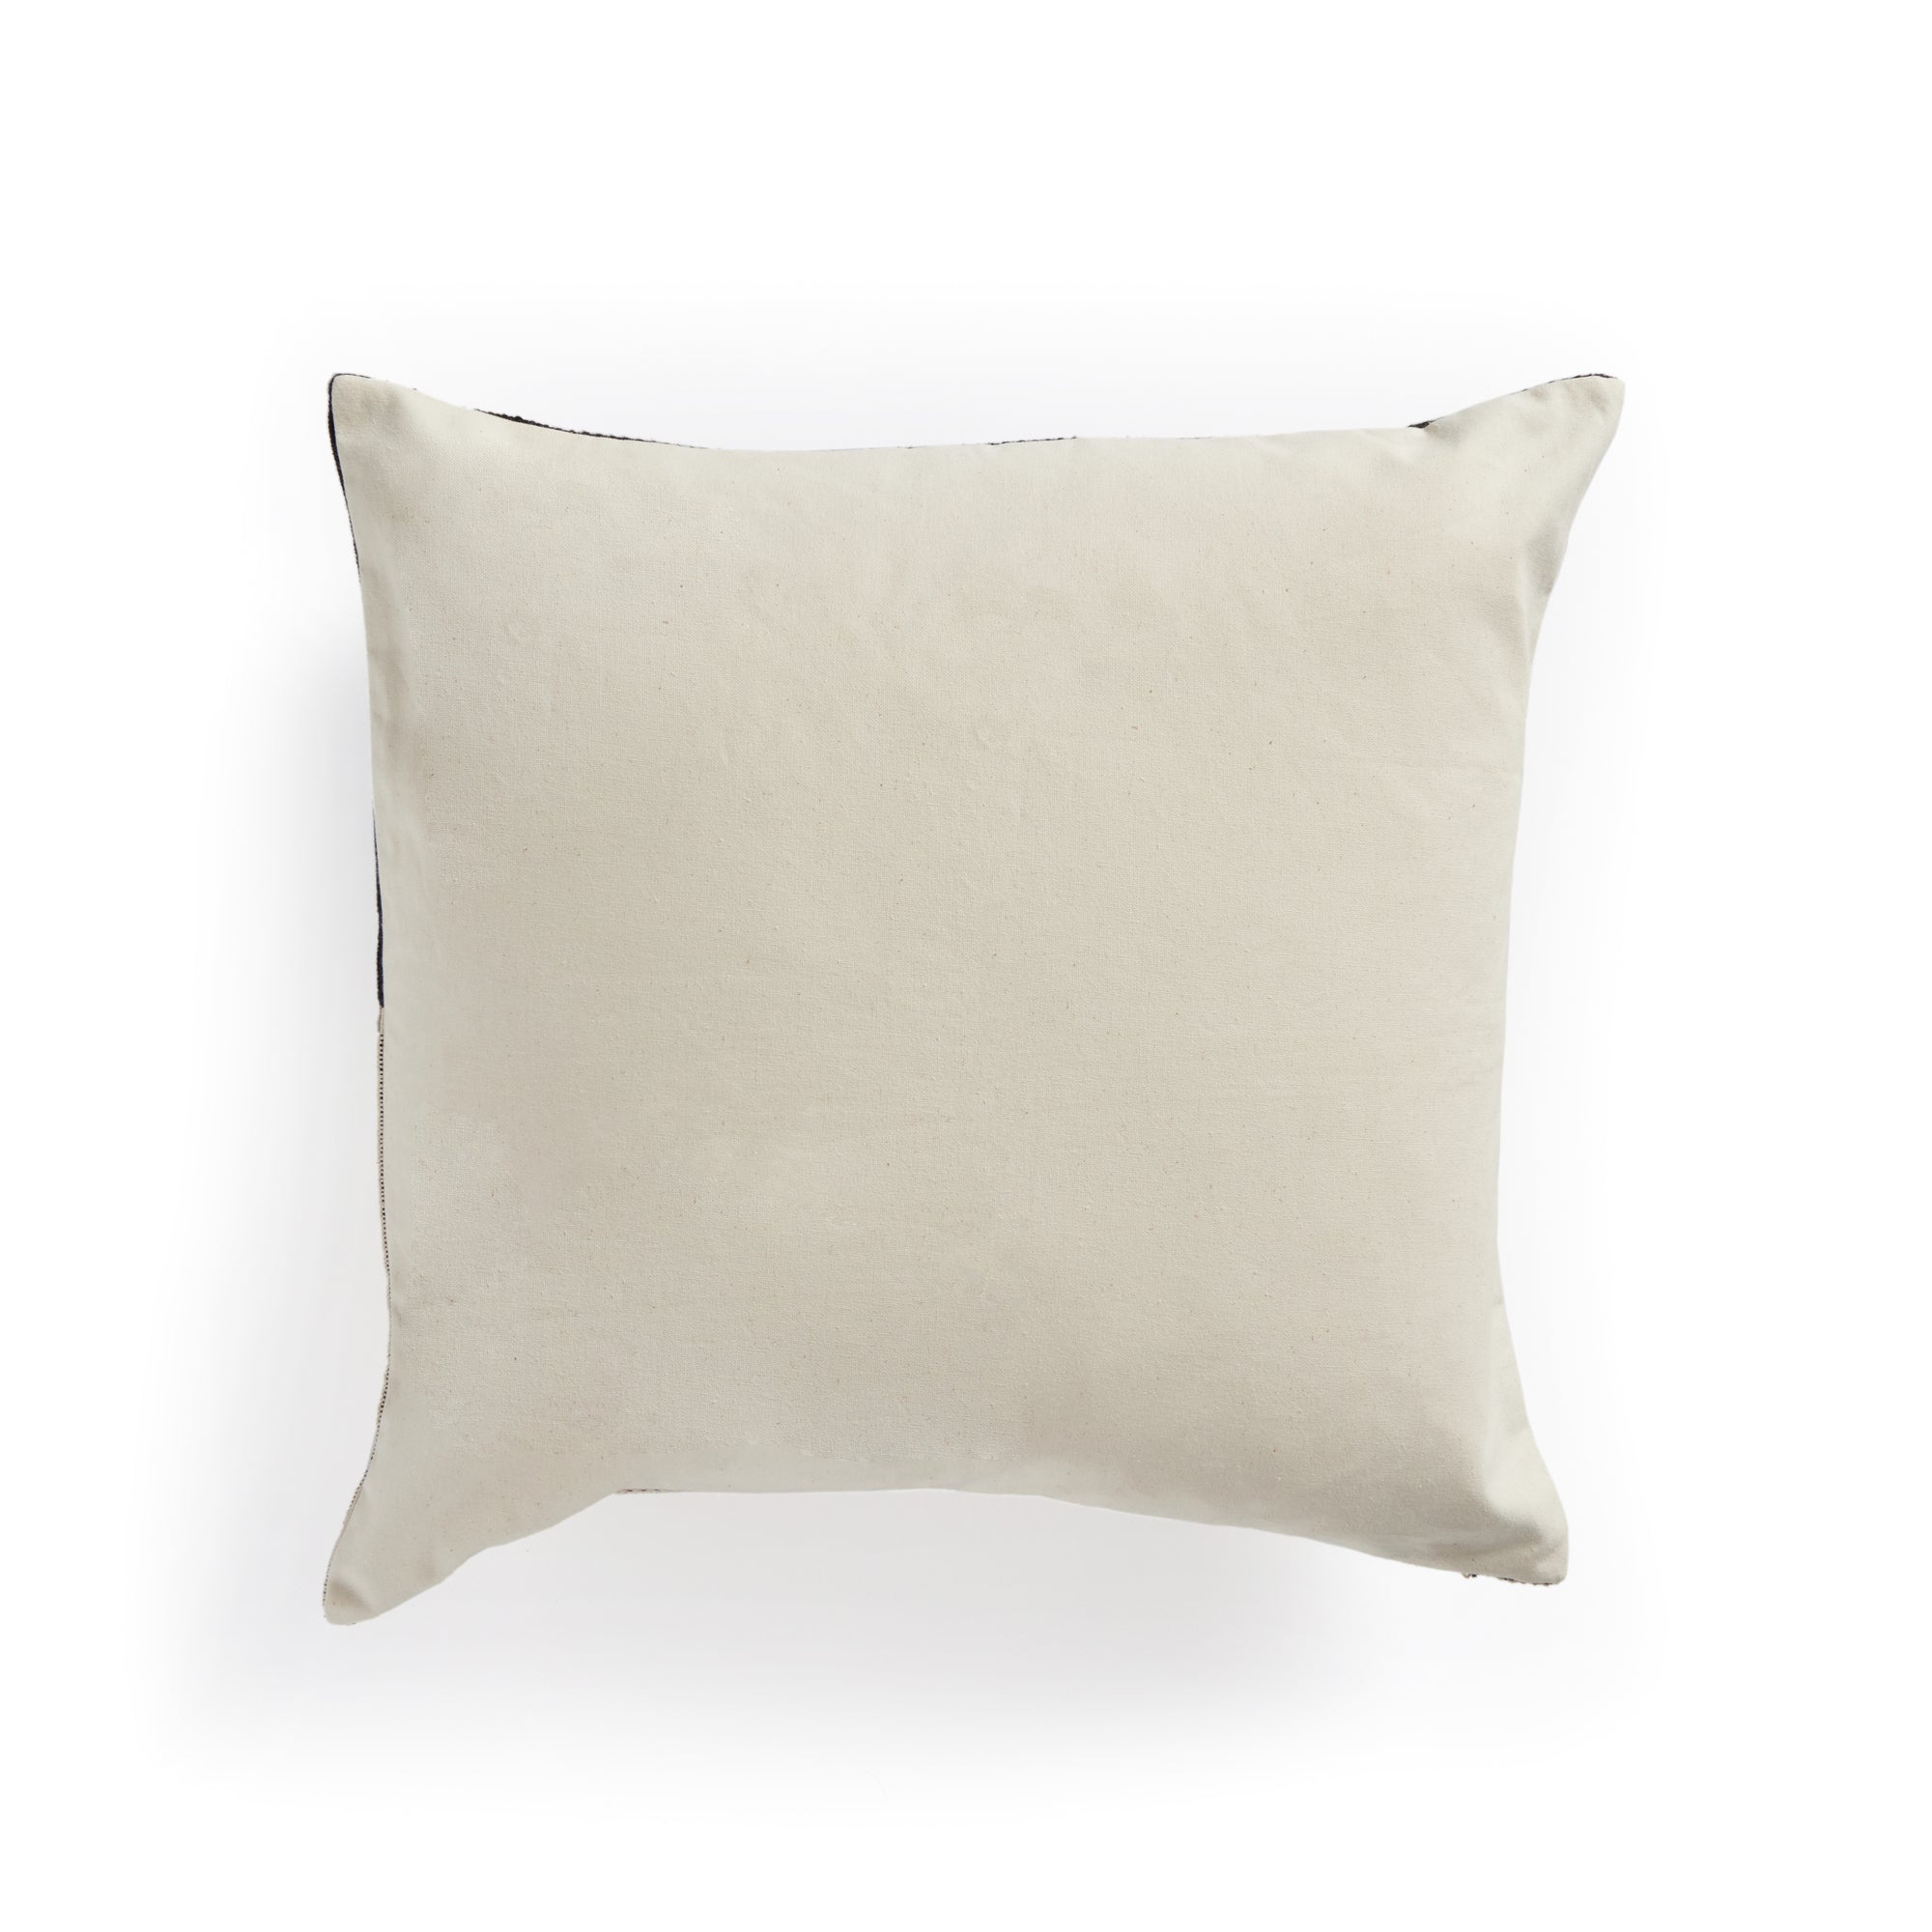 Madeline Handwoven Pillow - Black